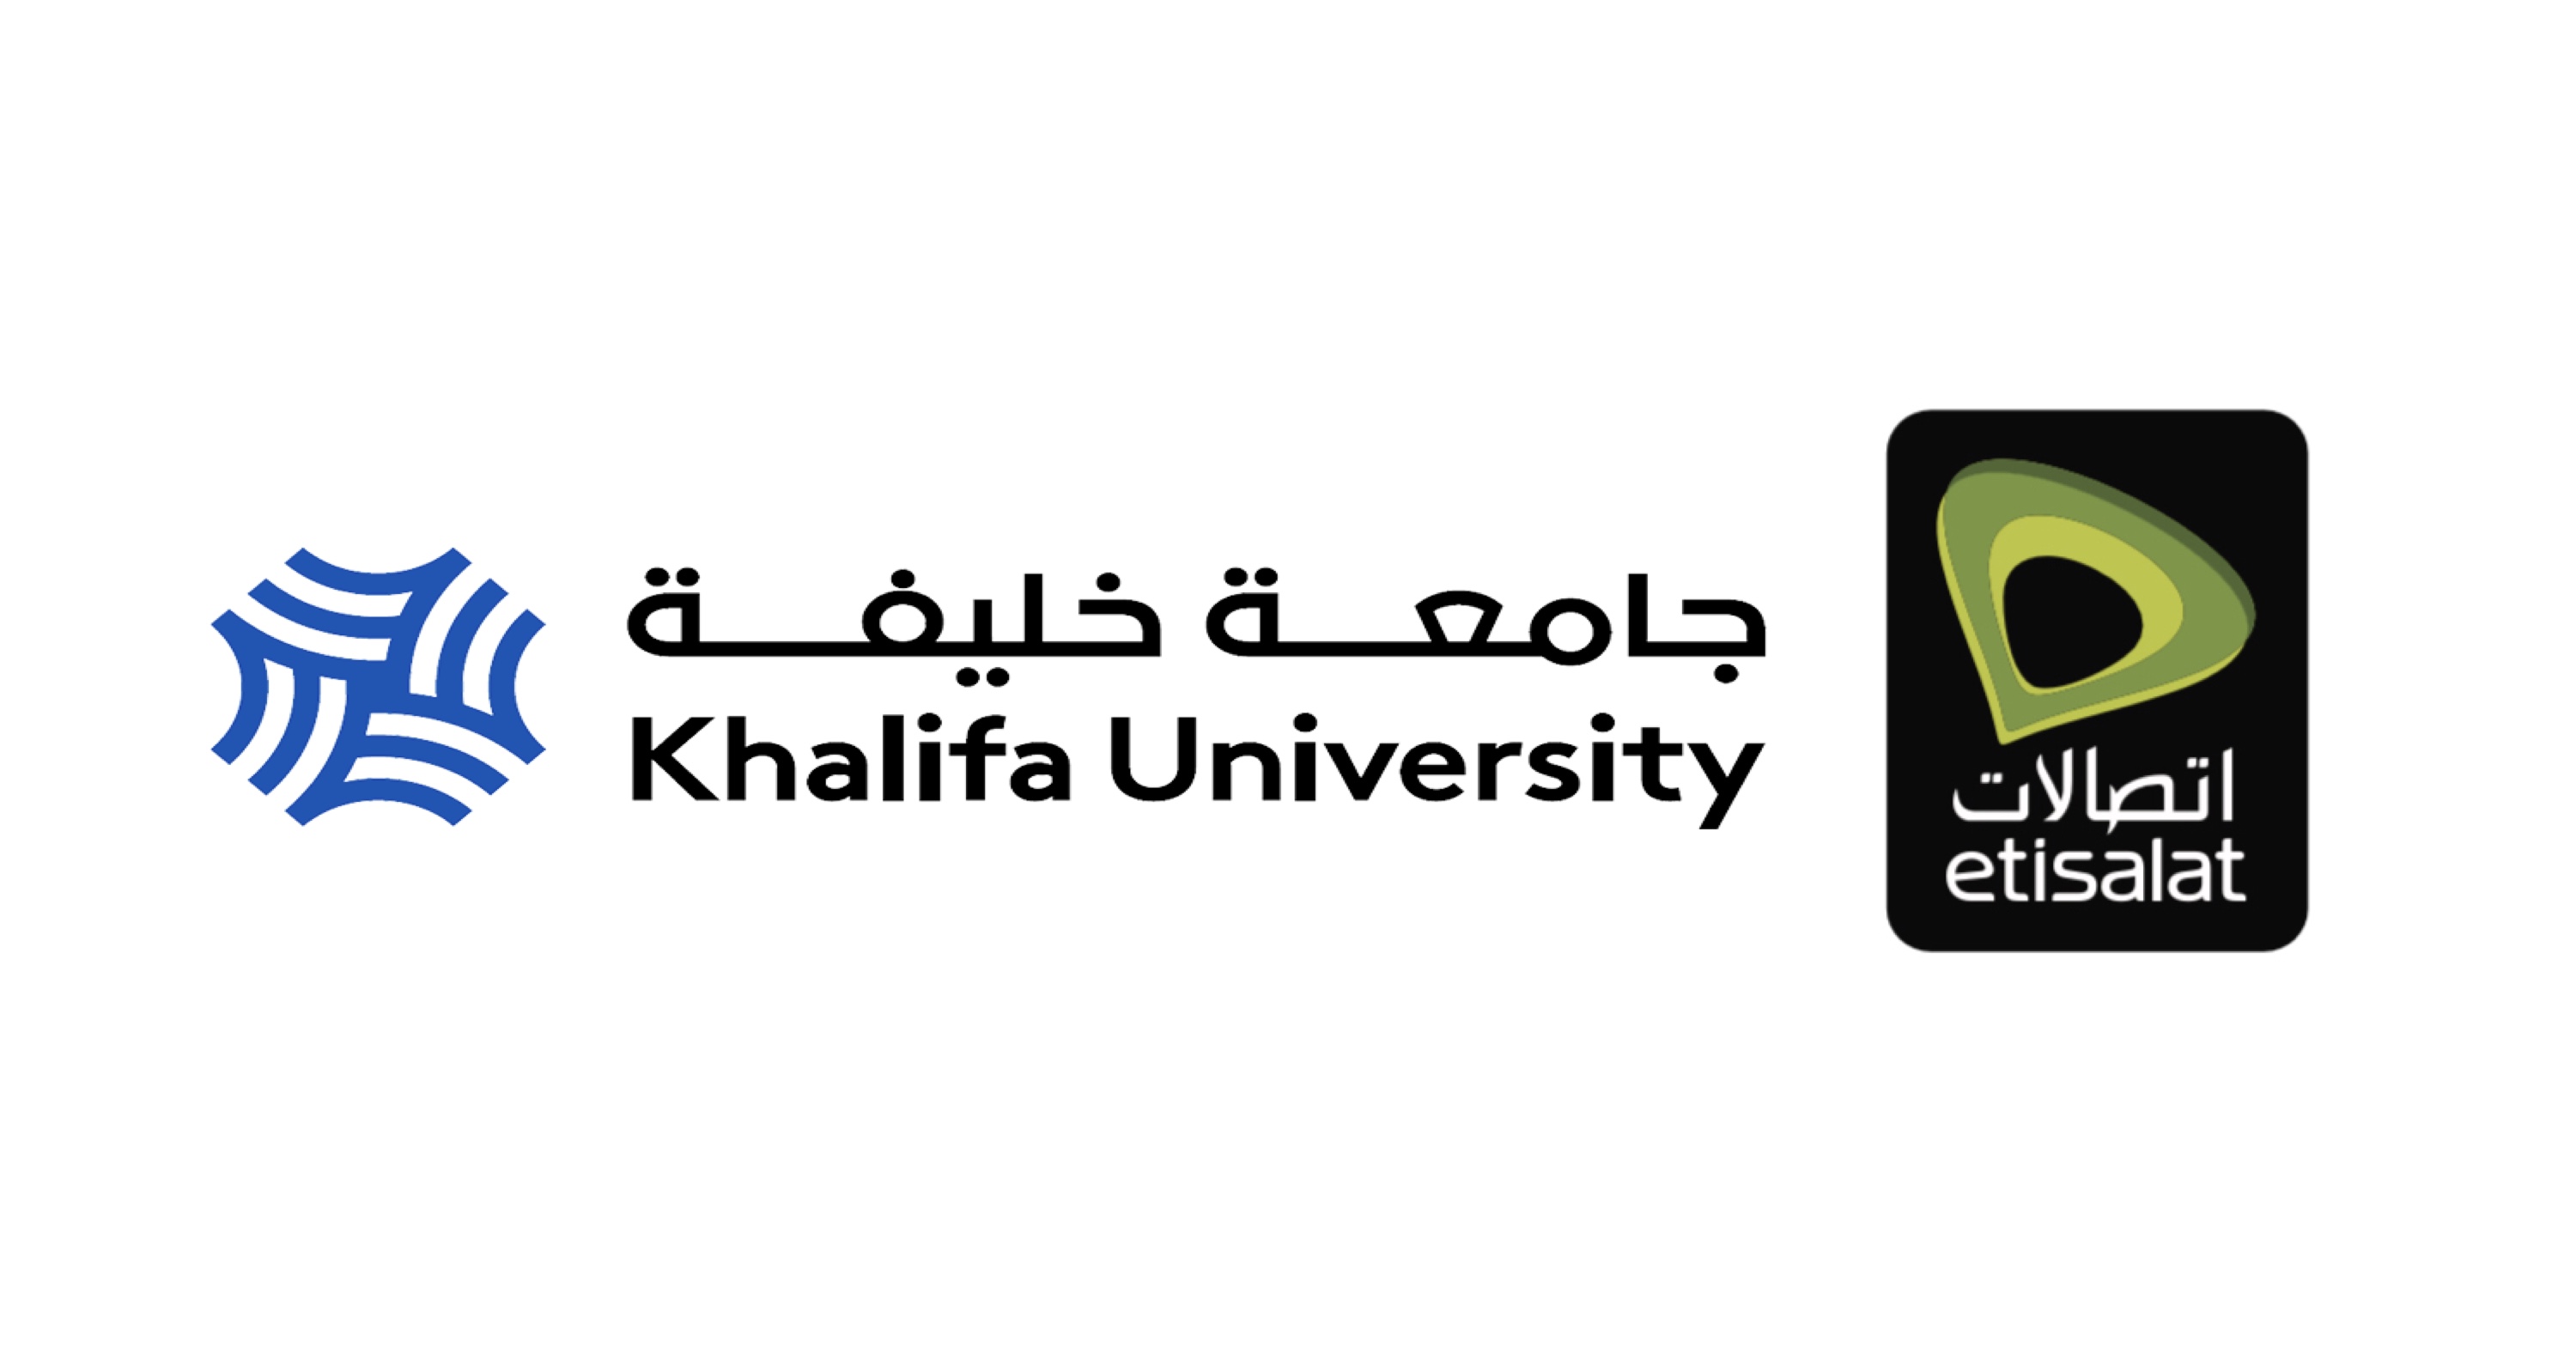 ‫"اتصالات" و"جامعة خليفة" رعاية ماسية لمعرض عجمان الدولي للتعليم والتدريب 2019‬ ‫ ‬